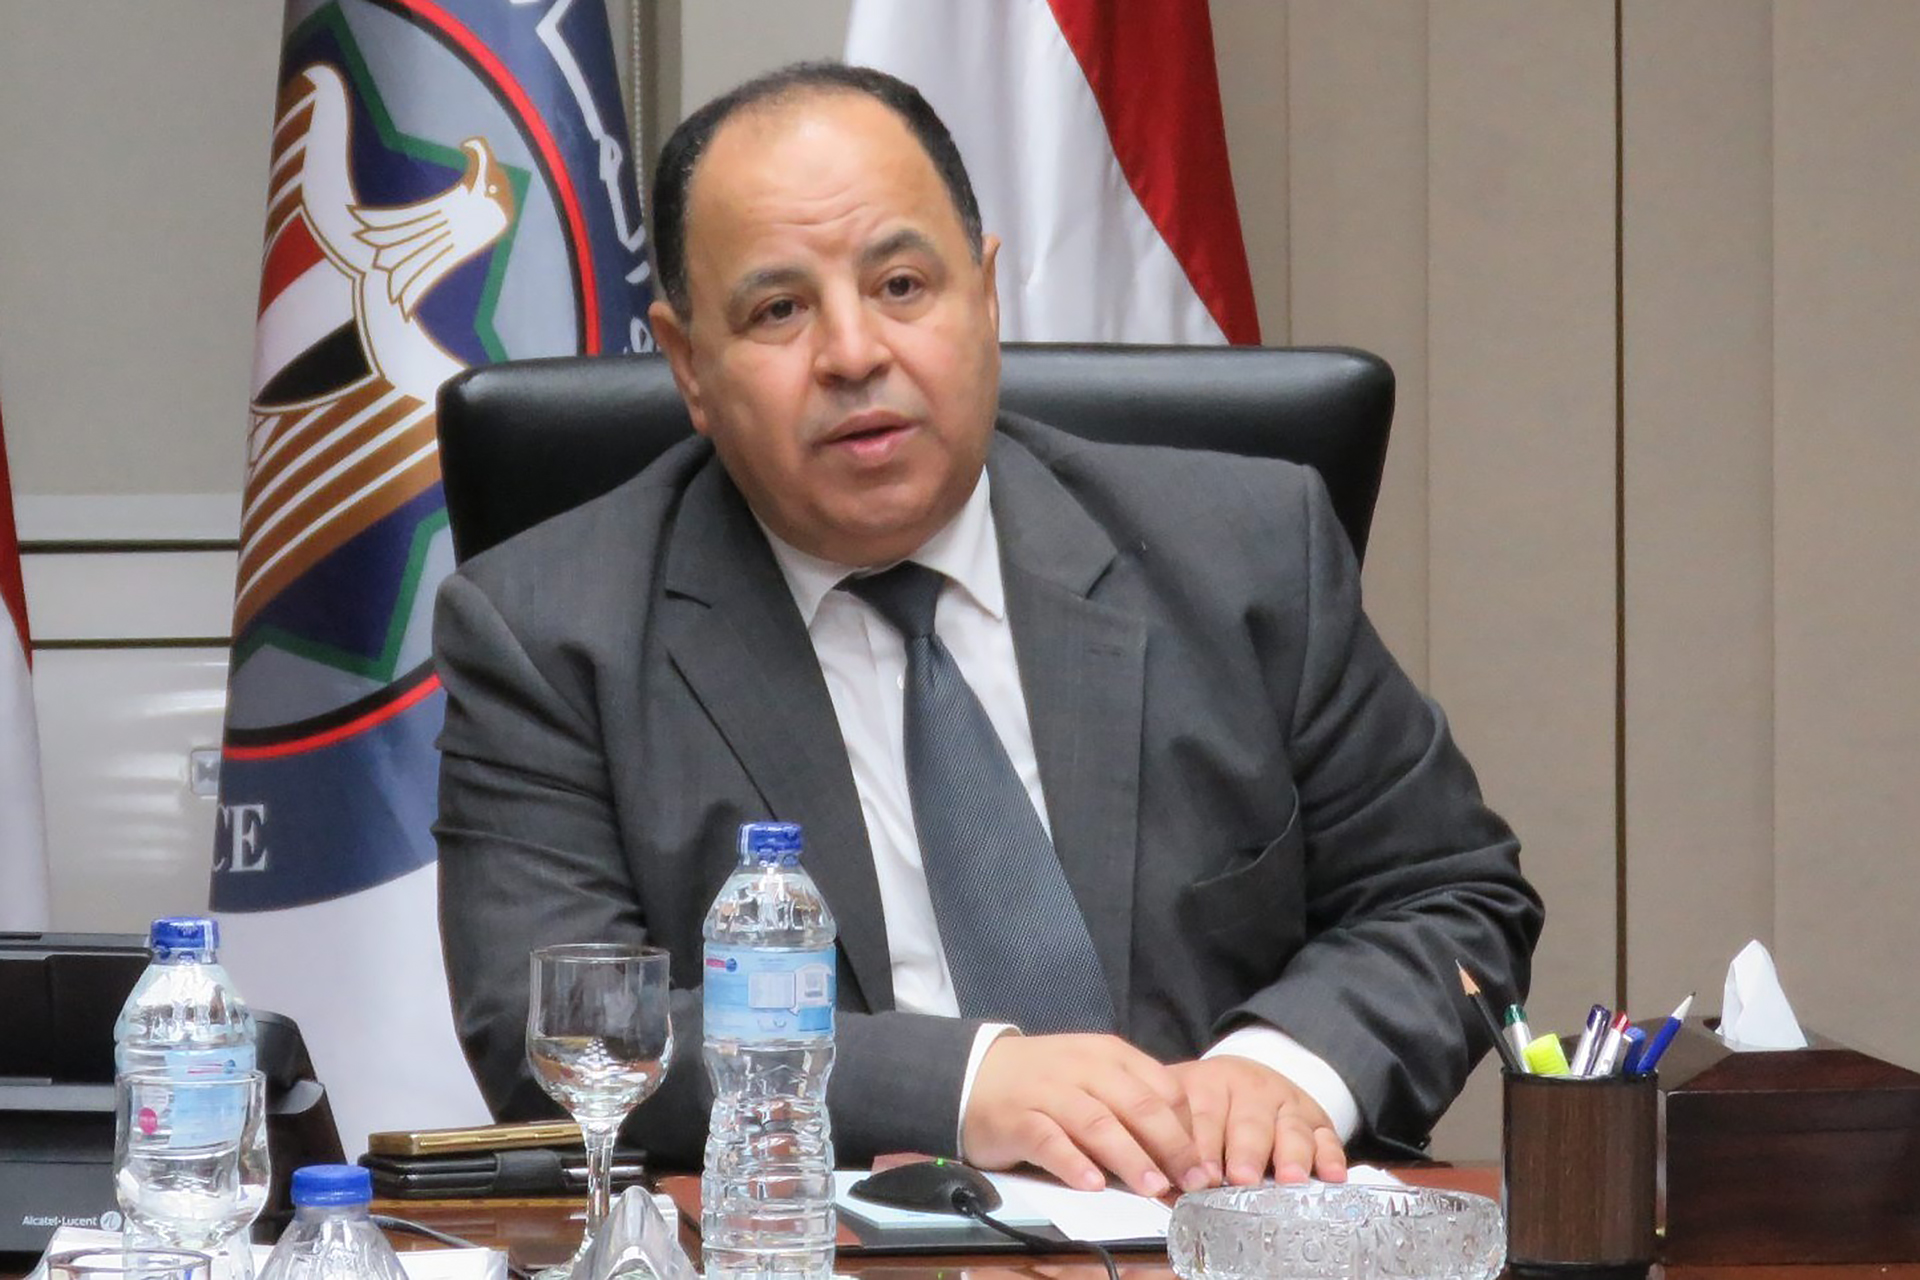 Le Ministre Egyptien annonce une chute de 60 pourcent des revenus Suez